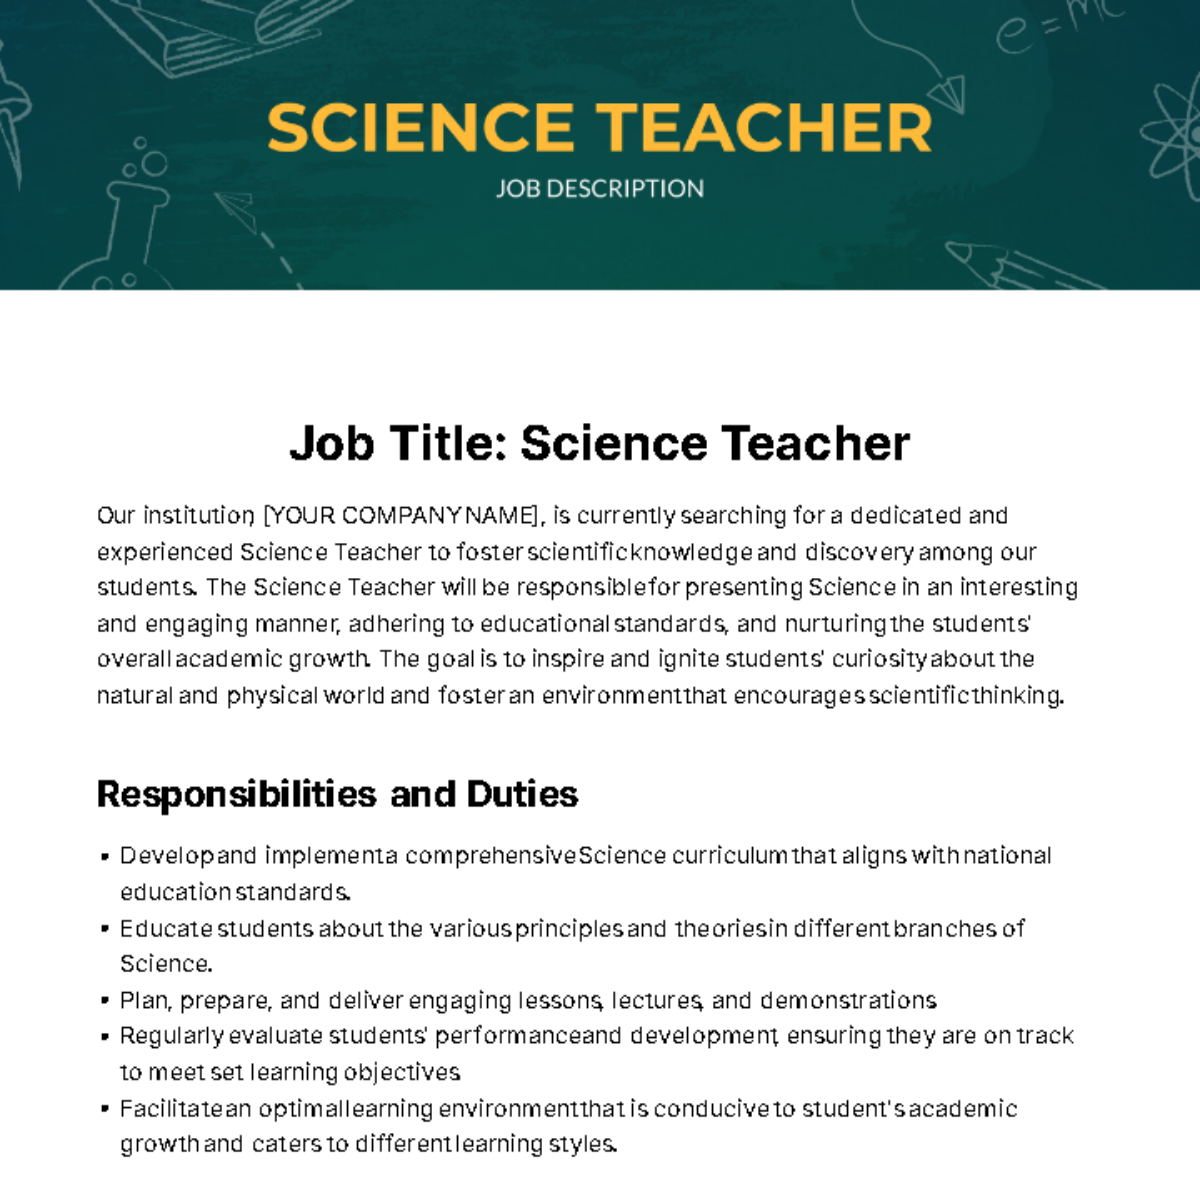 Science Teacher Job Description Template